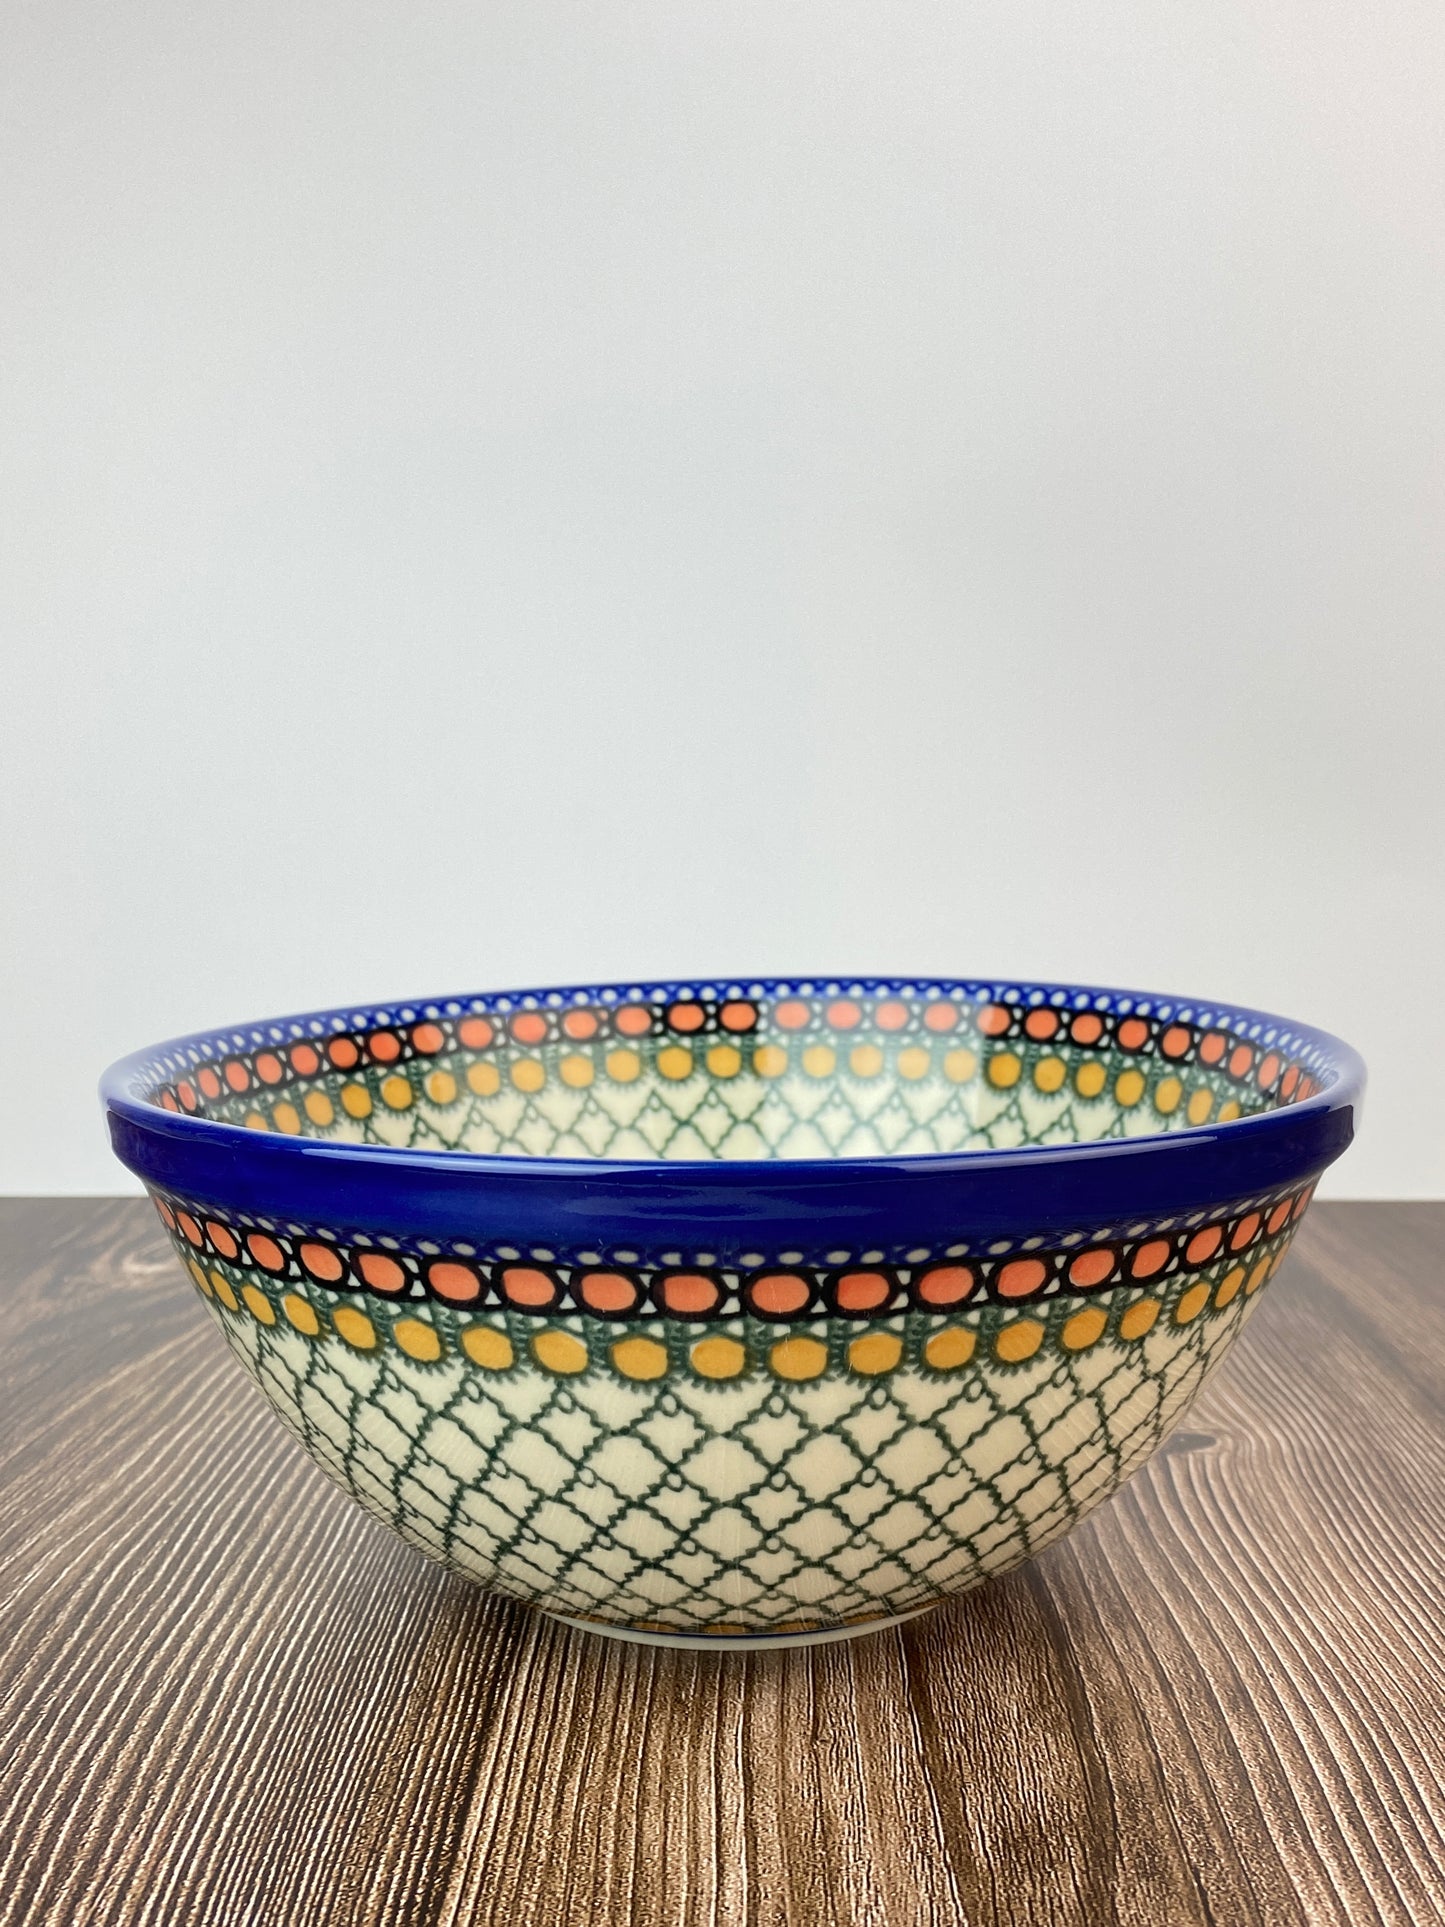 SALE Small Unikat Kitchen Bowl - Shape 57 - Pattern U81